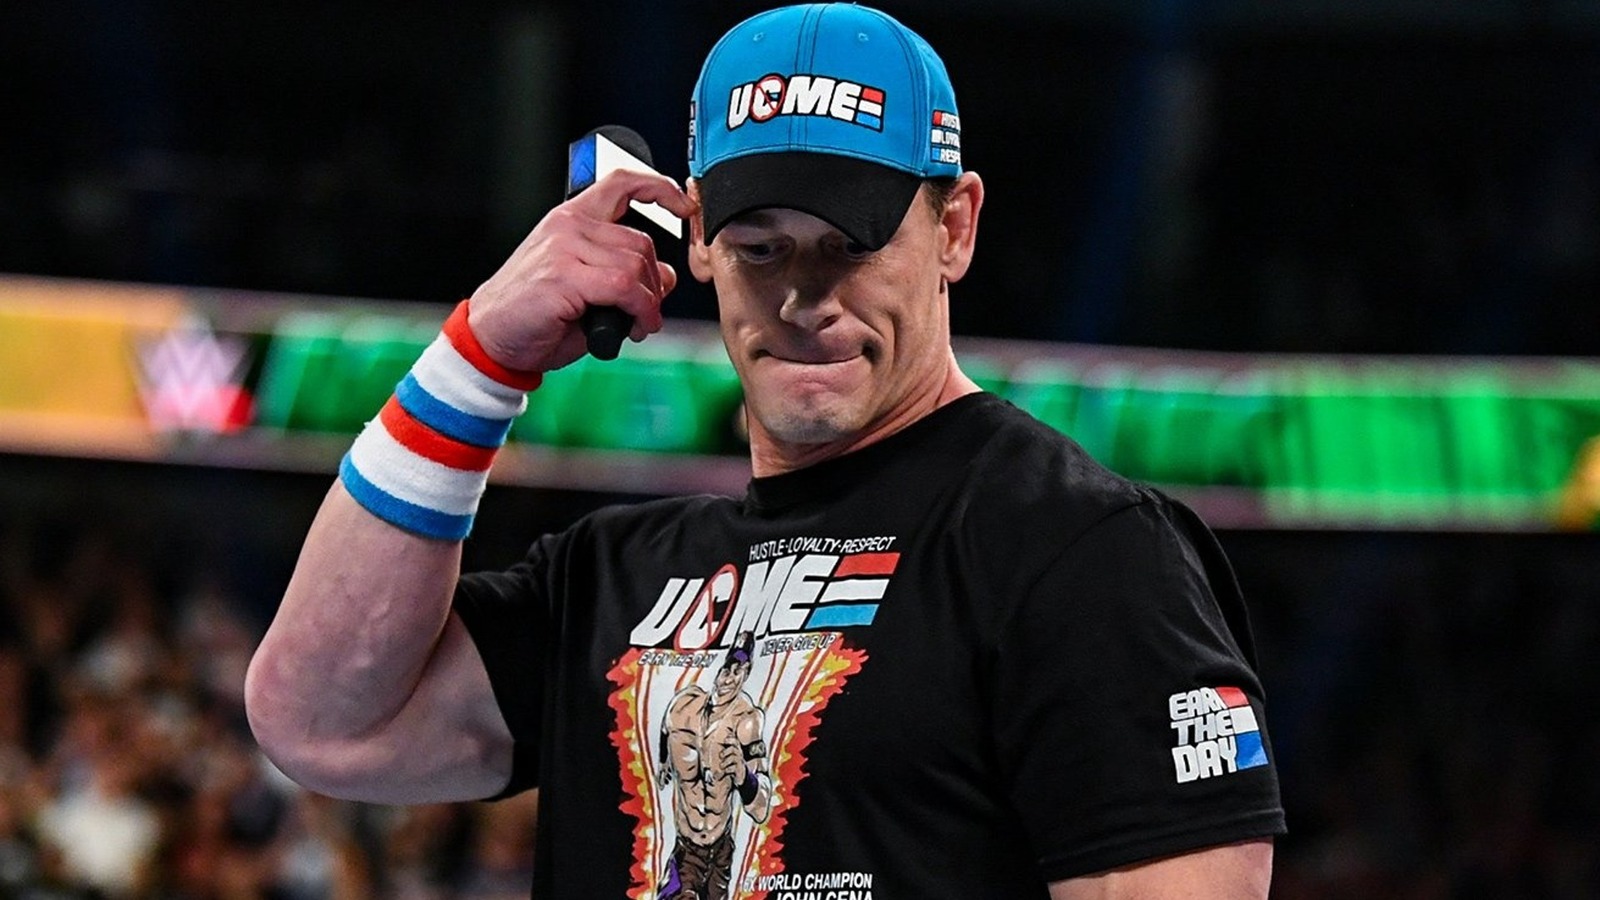 Bruce Prichard explica por qué John Cena fue elegido para ser el Top Guy de WWE